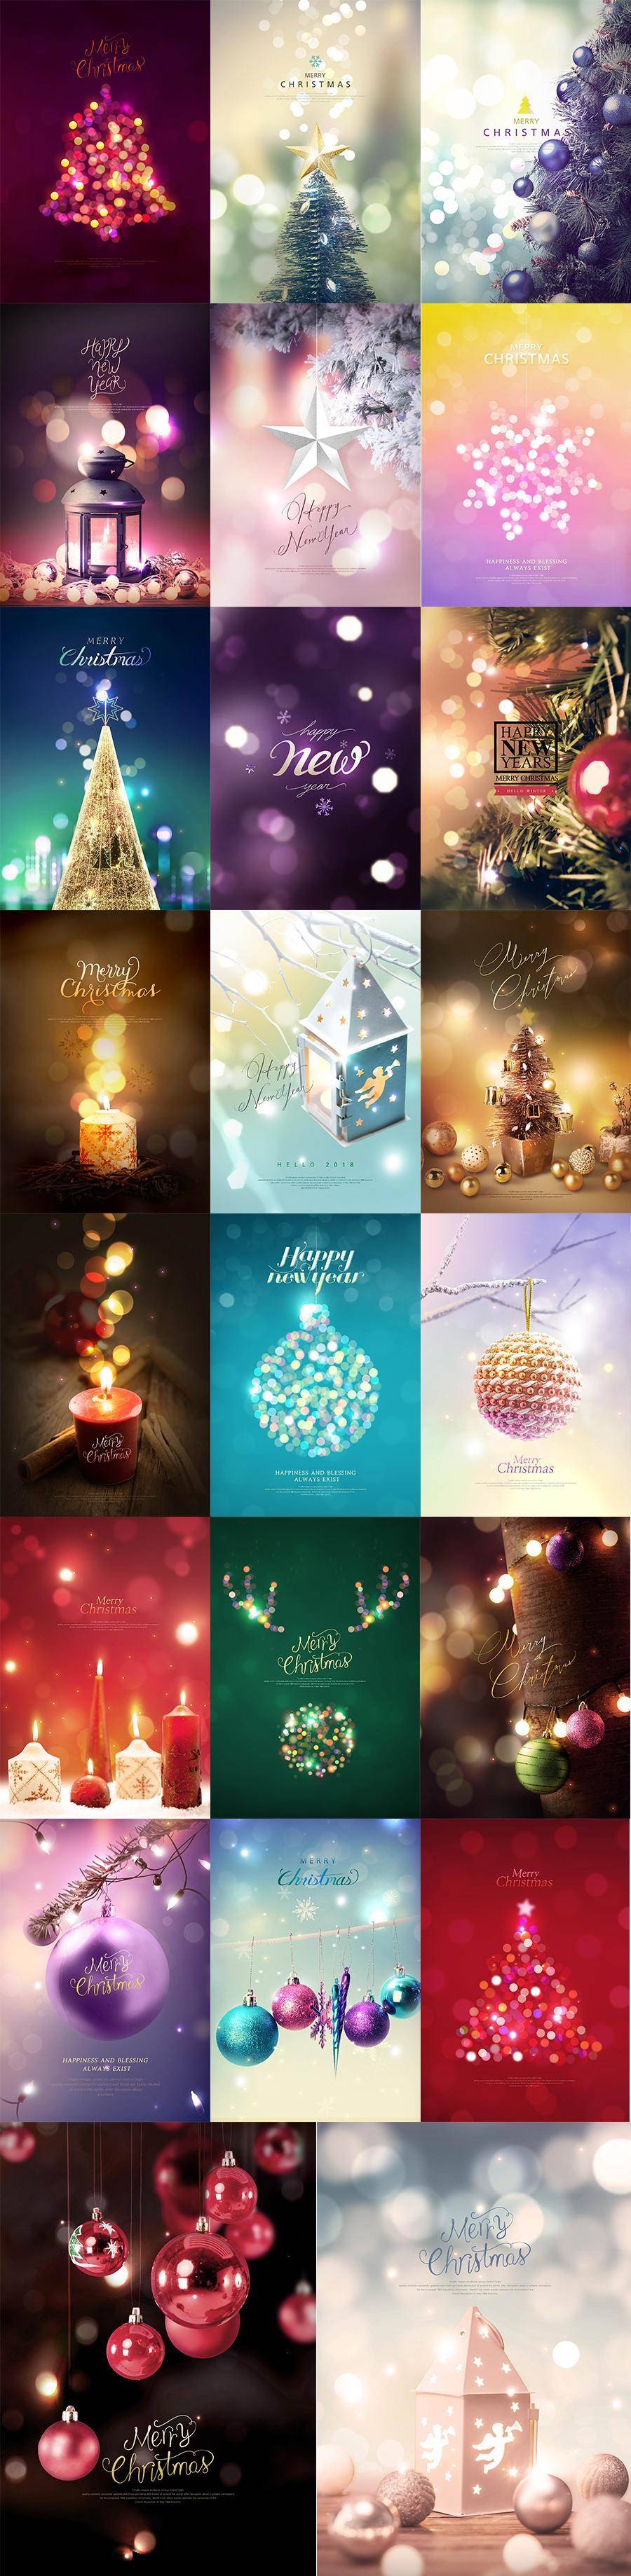 23款国外圣诞节日气氛冬天年末促销宣传贺卡海报PSD分层设计模板